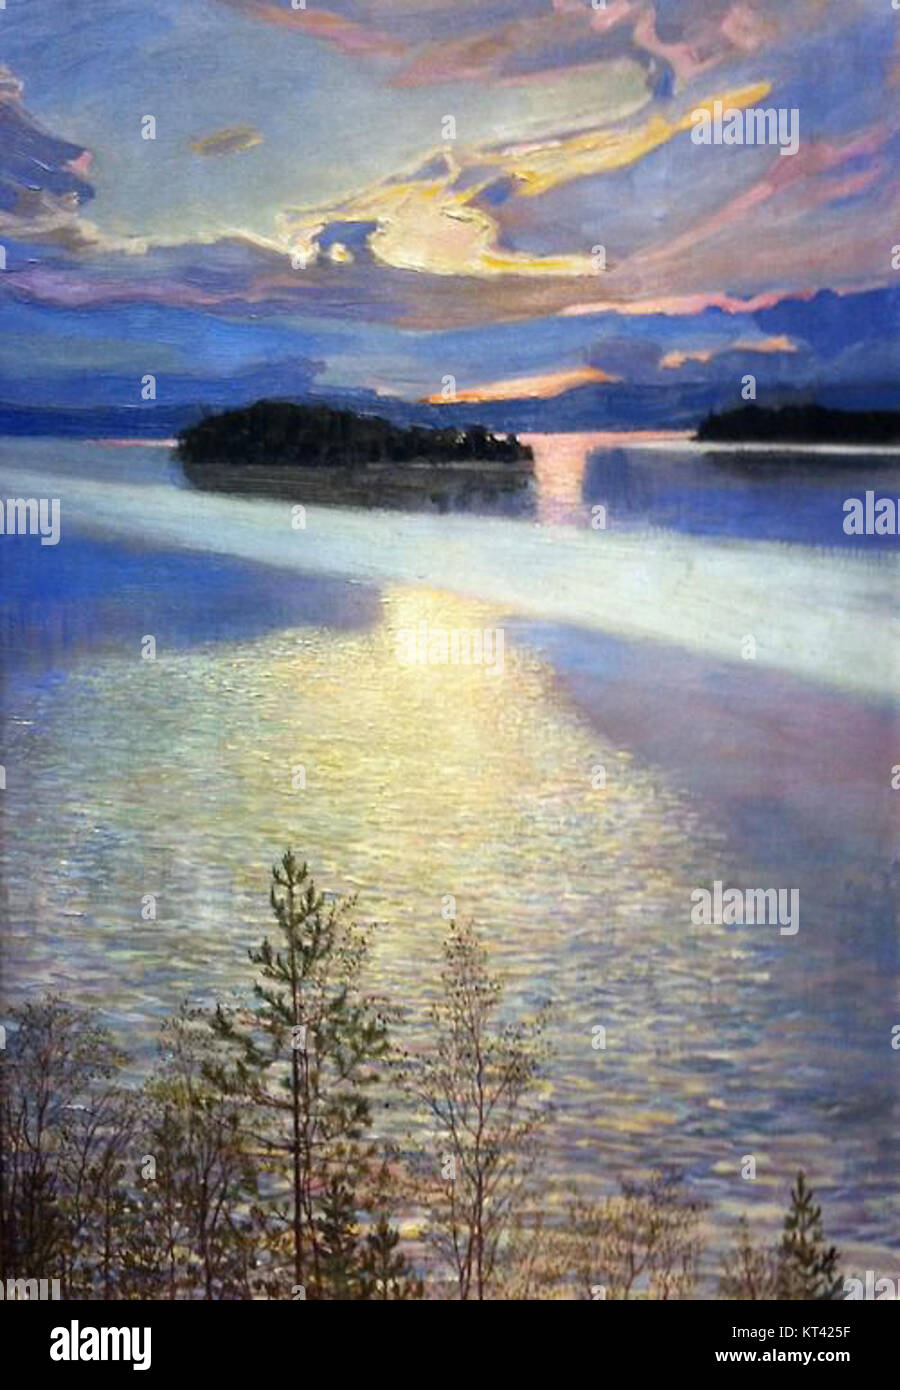 Lake View by Akseli Gallen-Kallela, 1901 Stock Photo